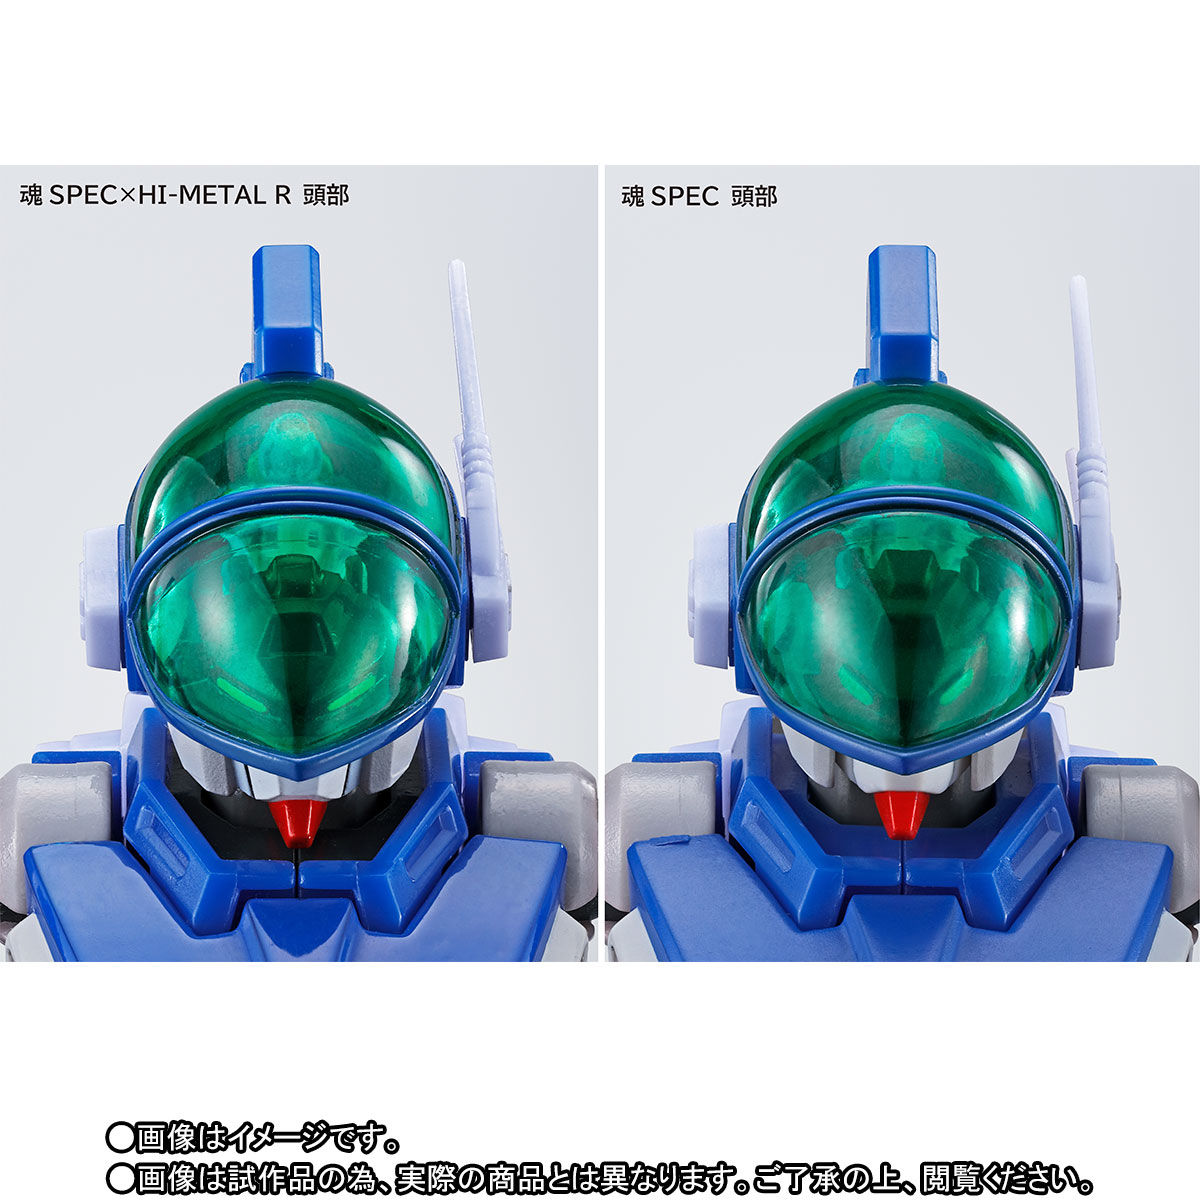 【限定販売】魂SPEC×HI-METAL R『ニューレイズナー』蒼き流星SPTレイズナー 可動フィギュア-008